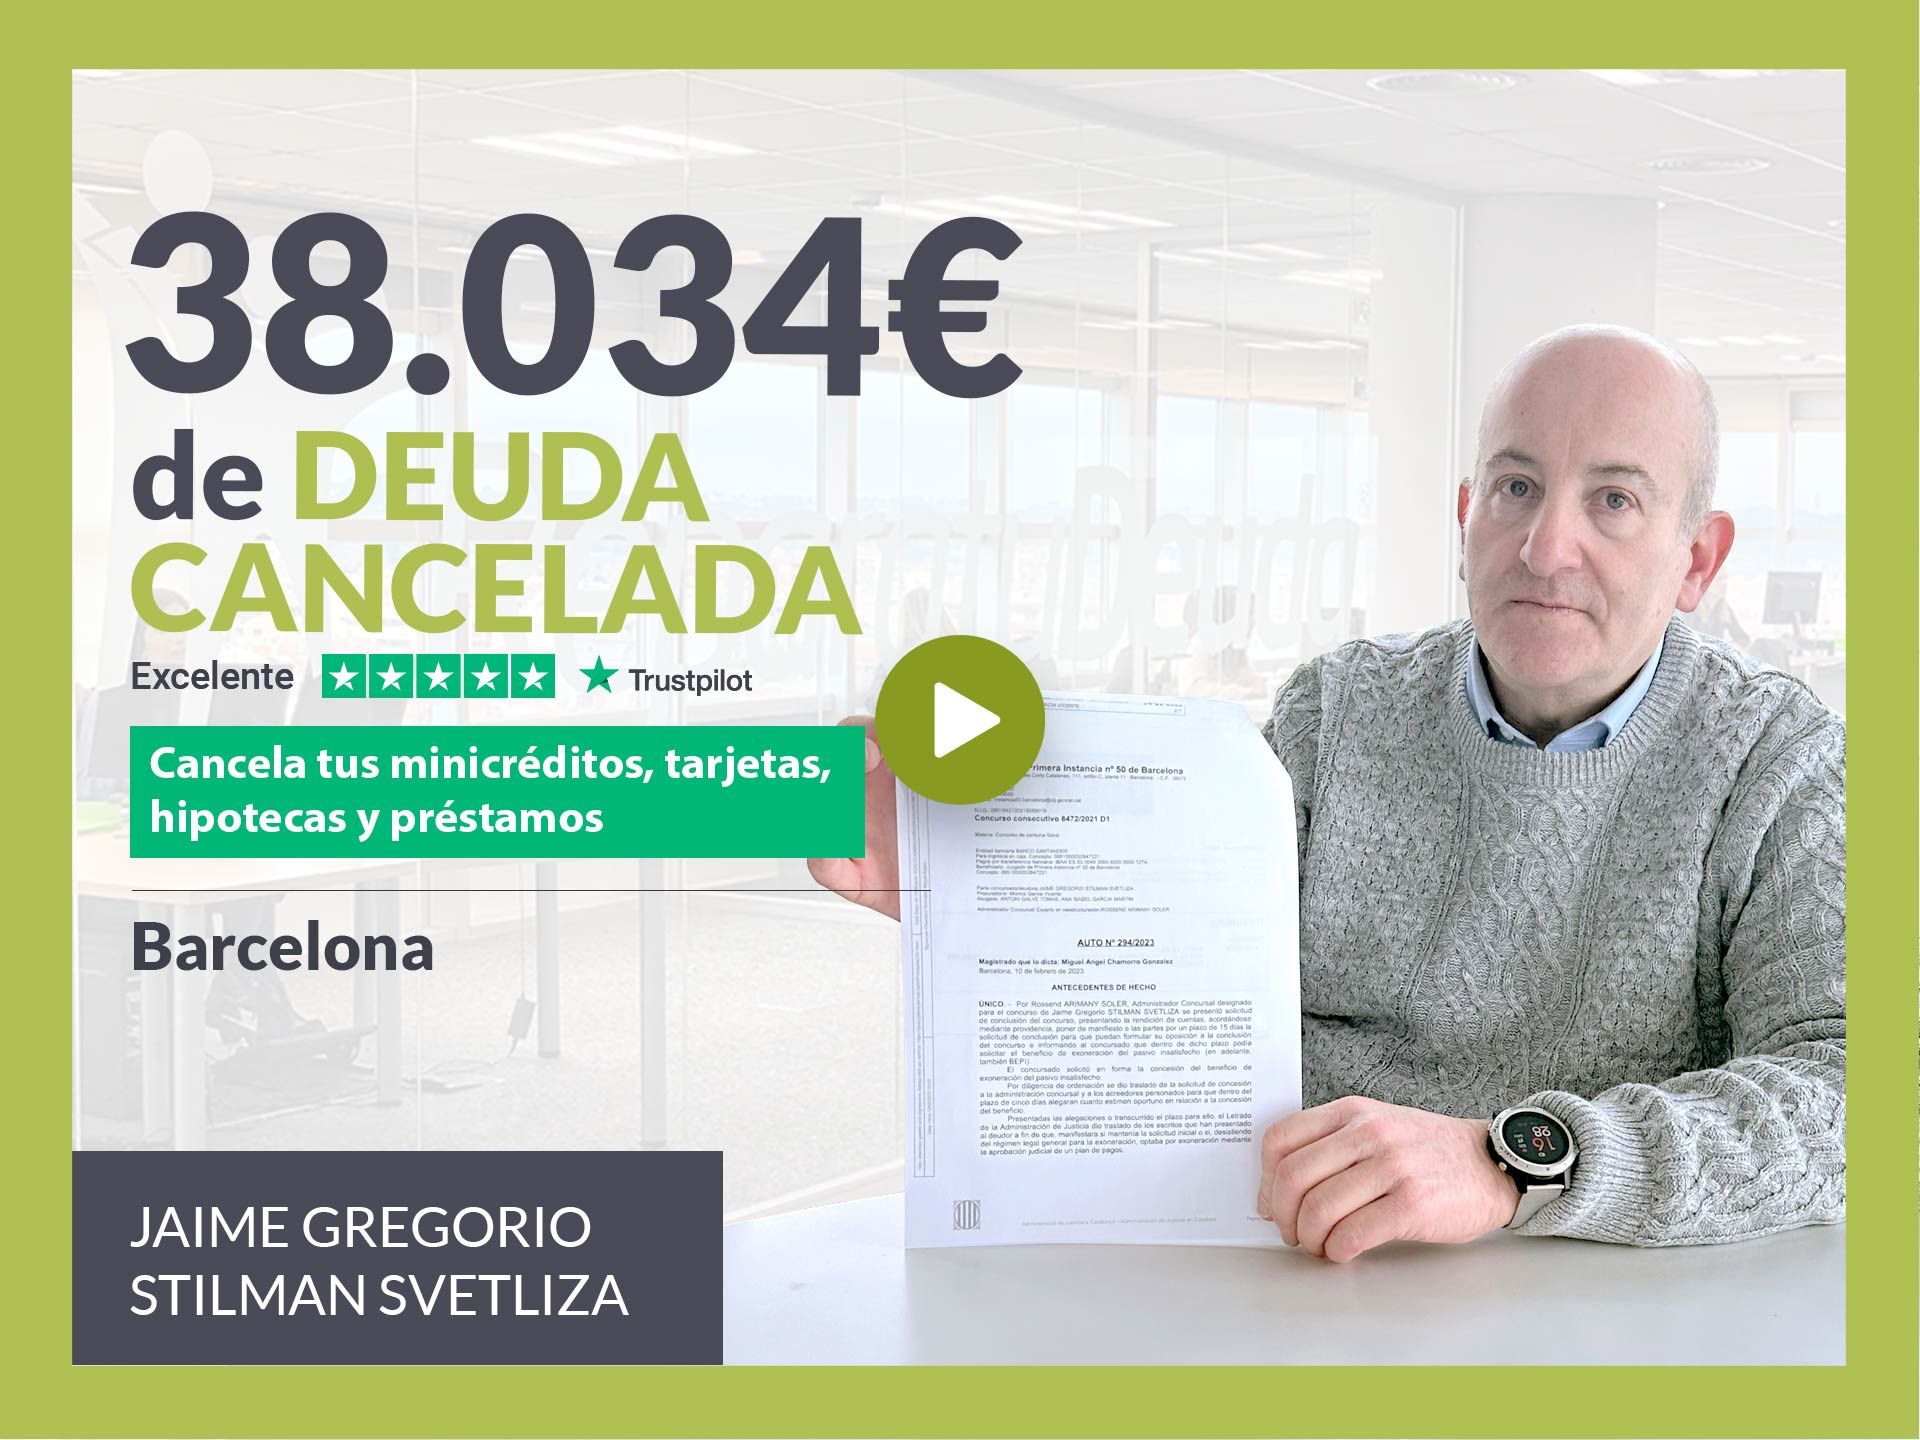 Repara tu Deuda Abogados cancela 38.034 ? en Barcelona (Catalunya) con la Ley de Segunda Oportunidad